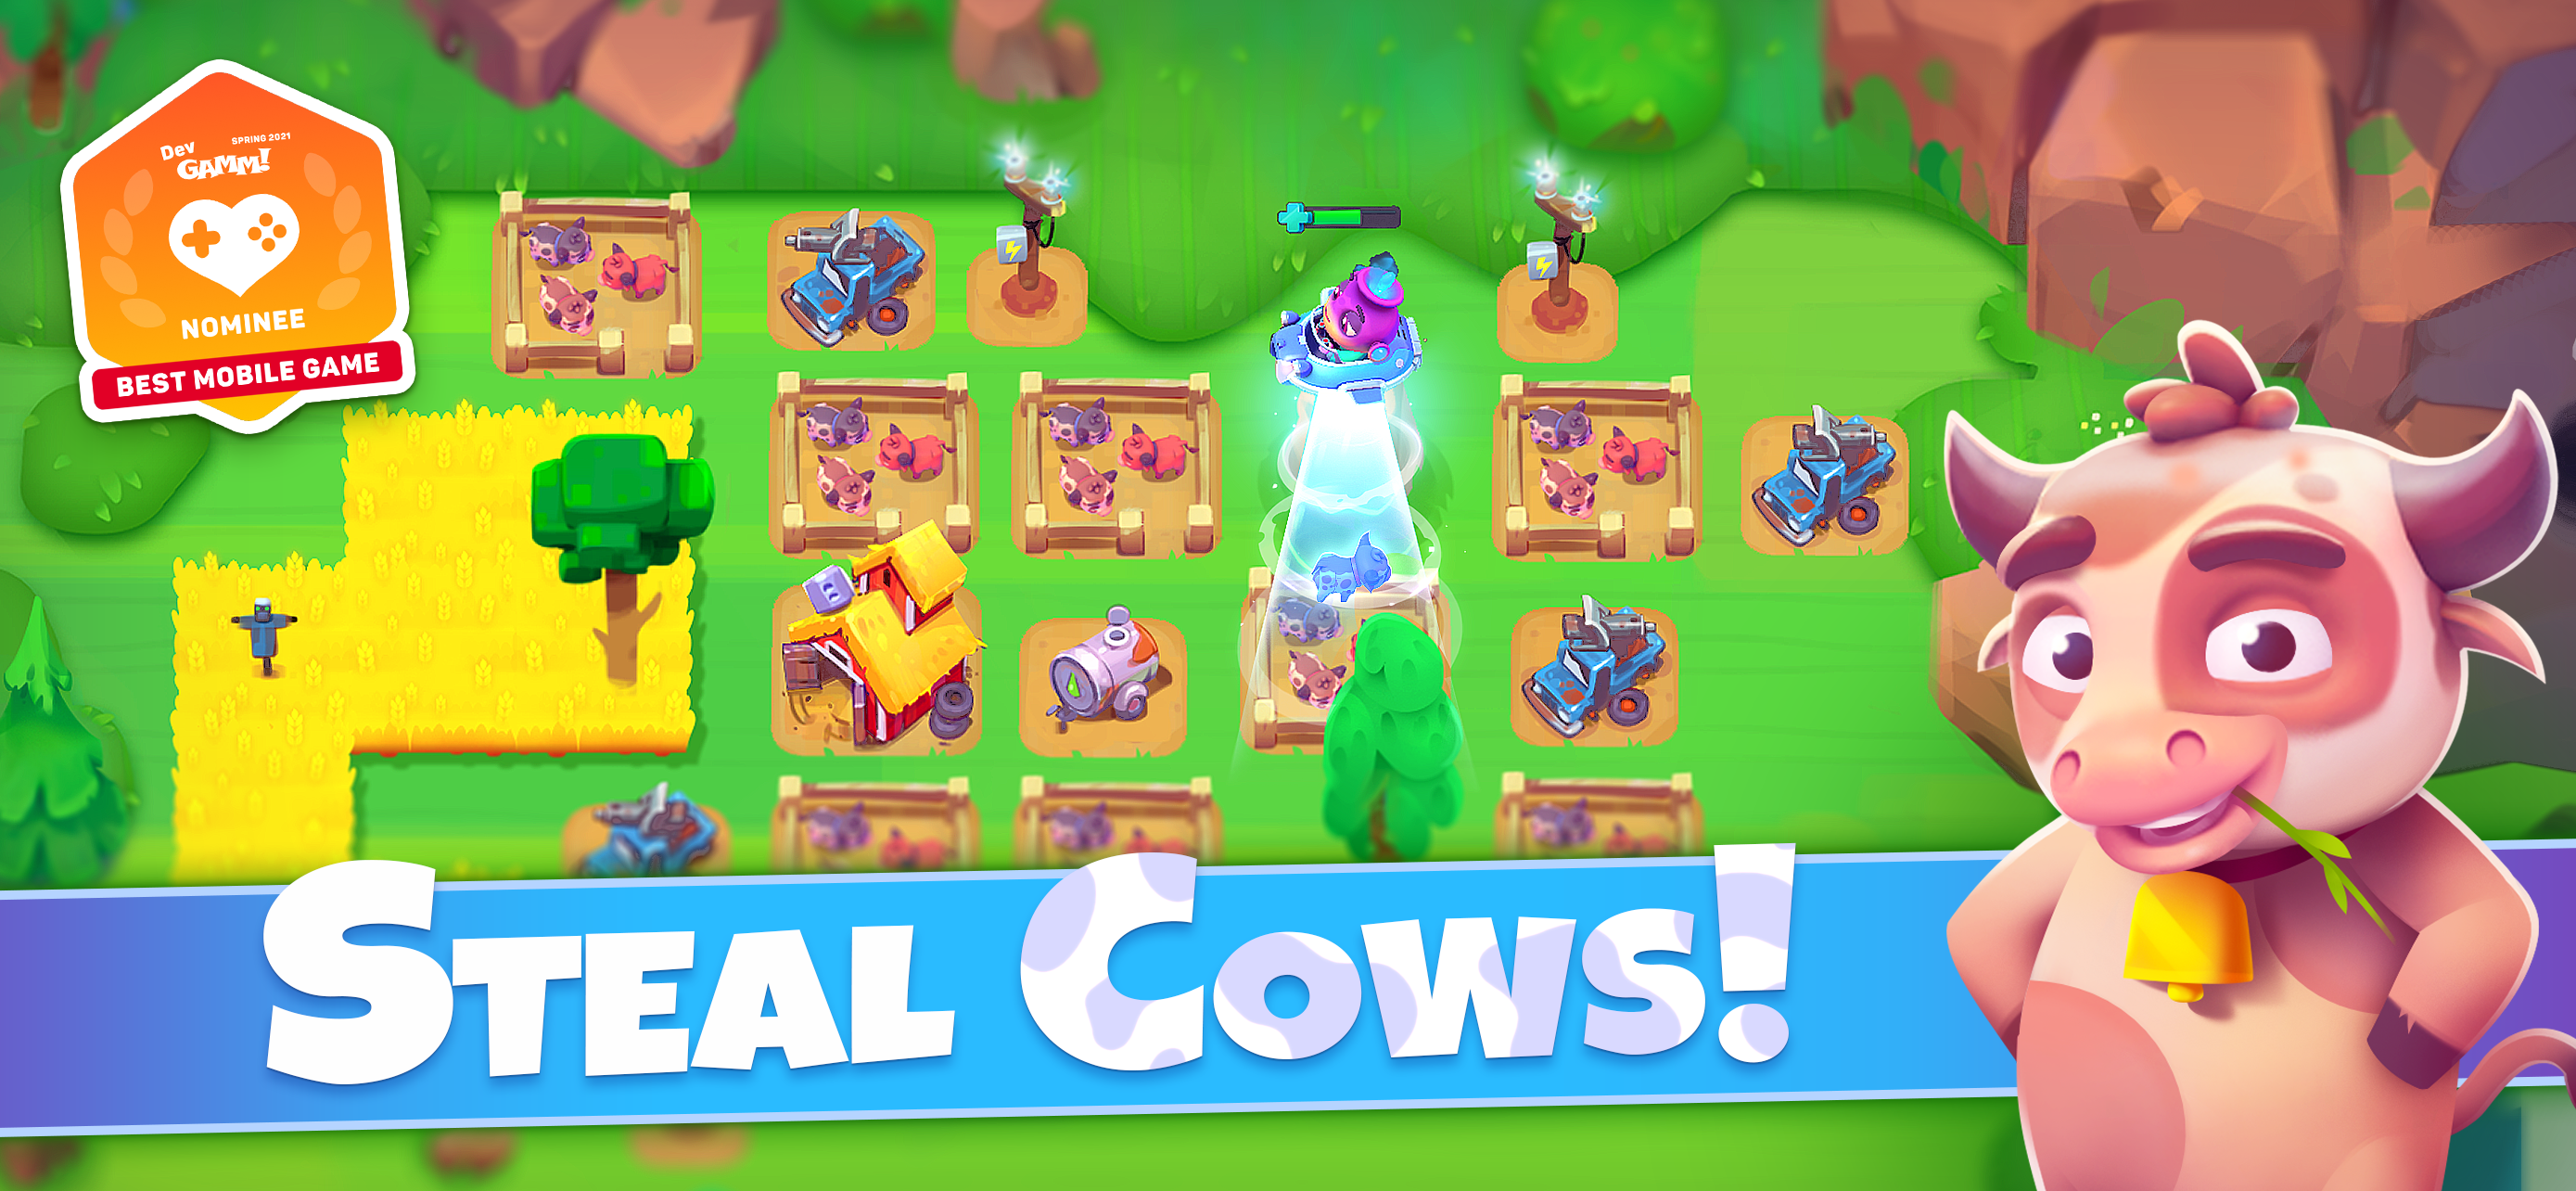 Screenshot 1 of Cowlifters: การปะทะกันเพื่อวัว 0.5.28